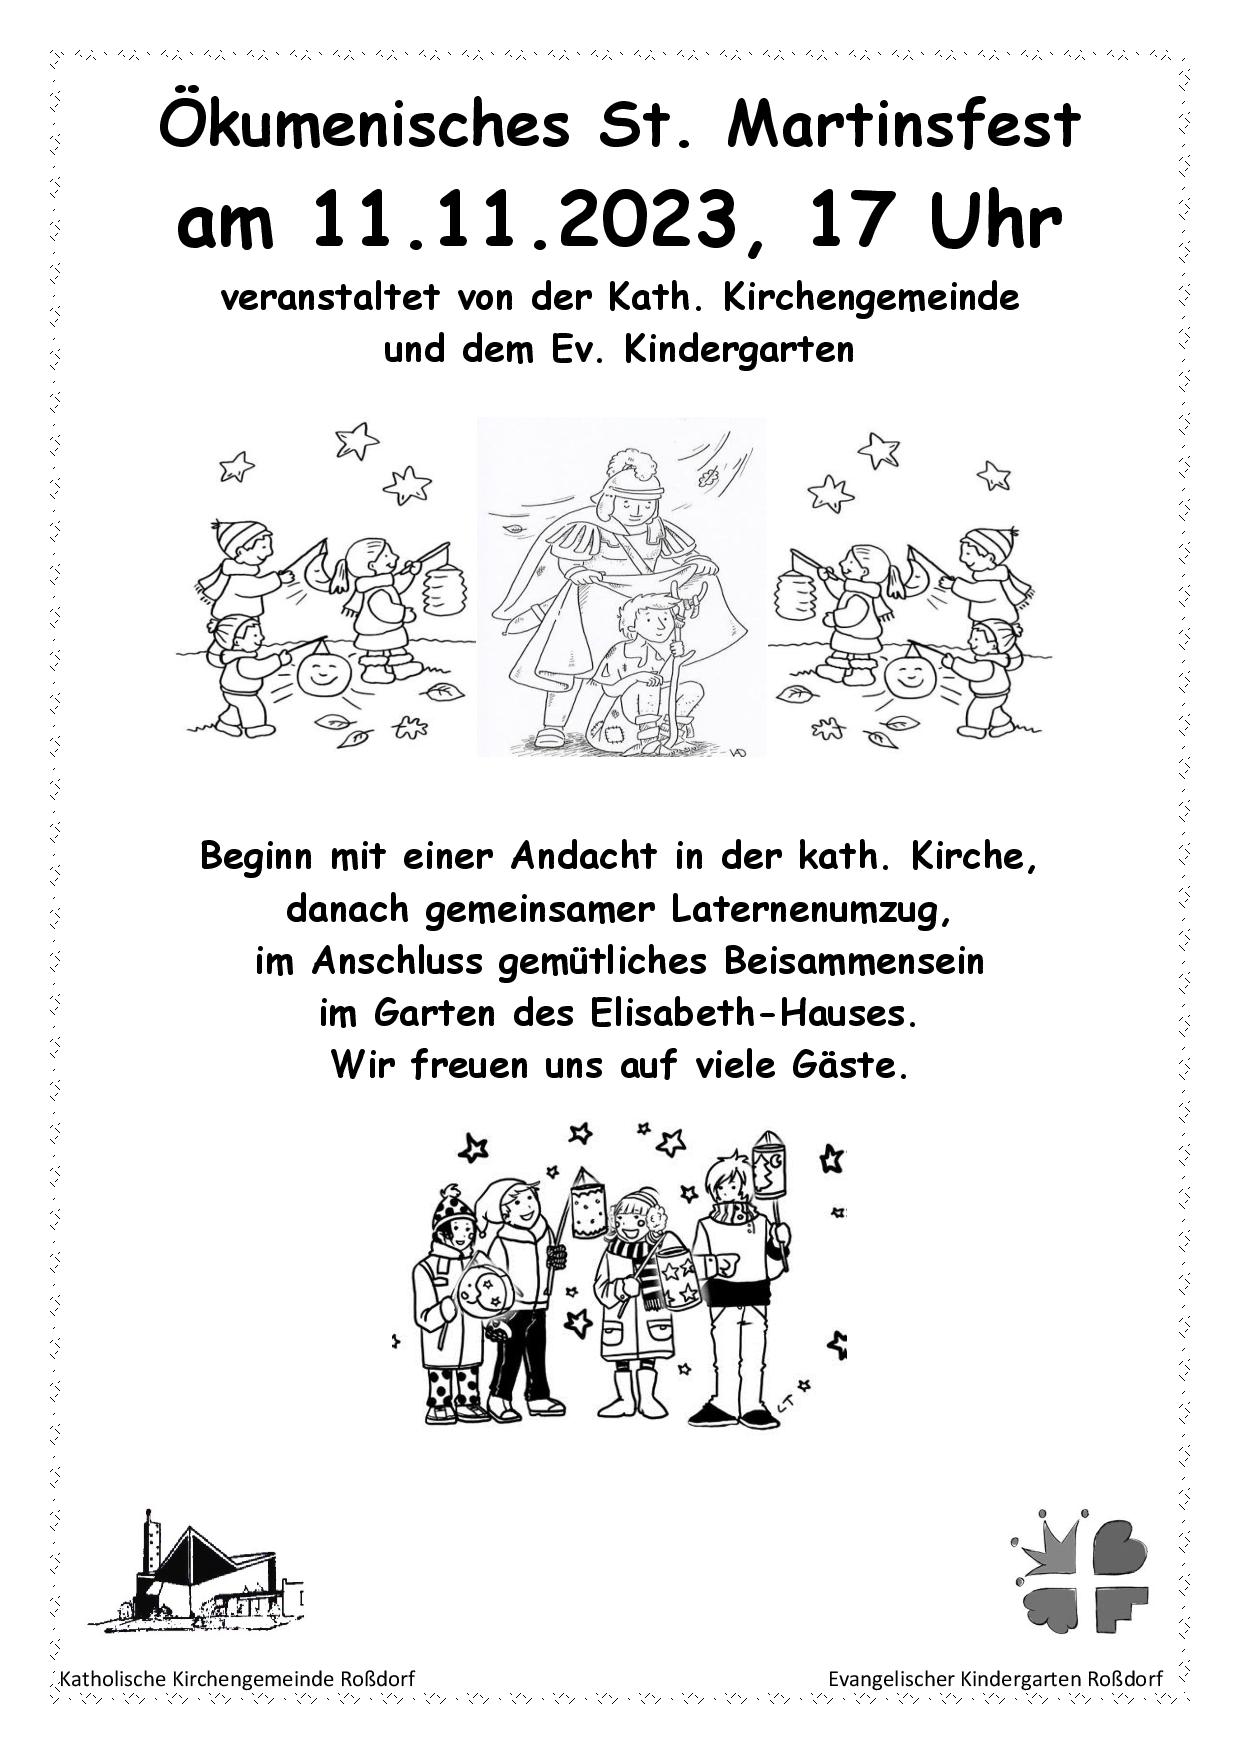 St.Martin Plakat 2023 (c) Evangelischer Kindergarten Roßdorf